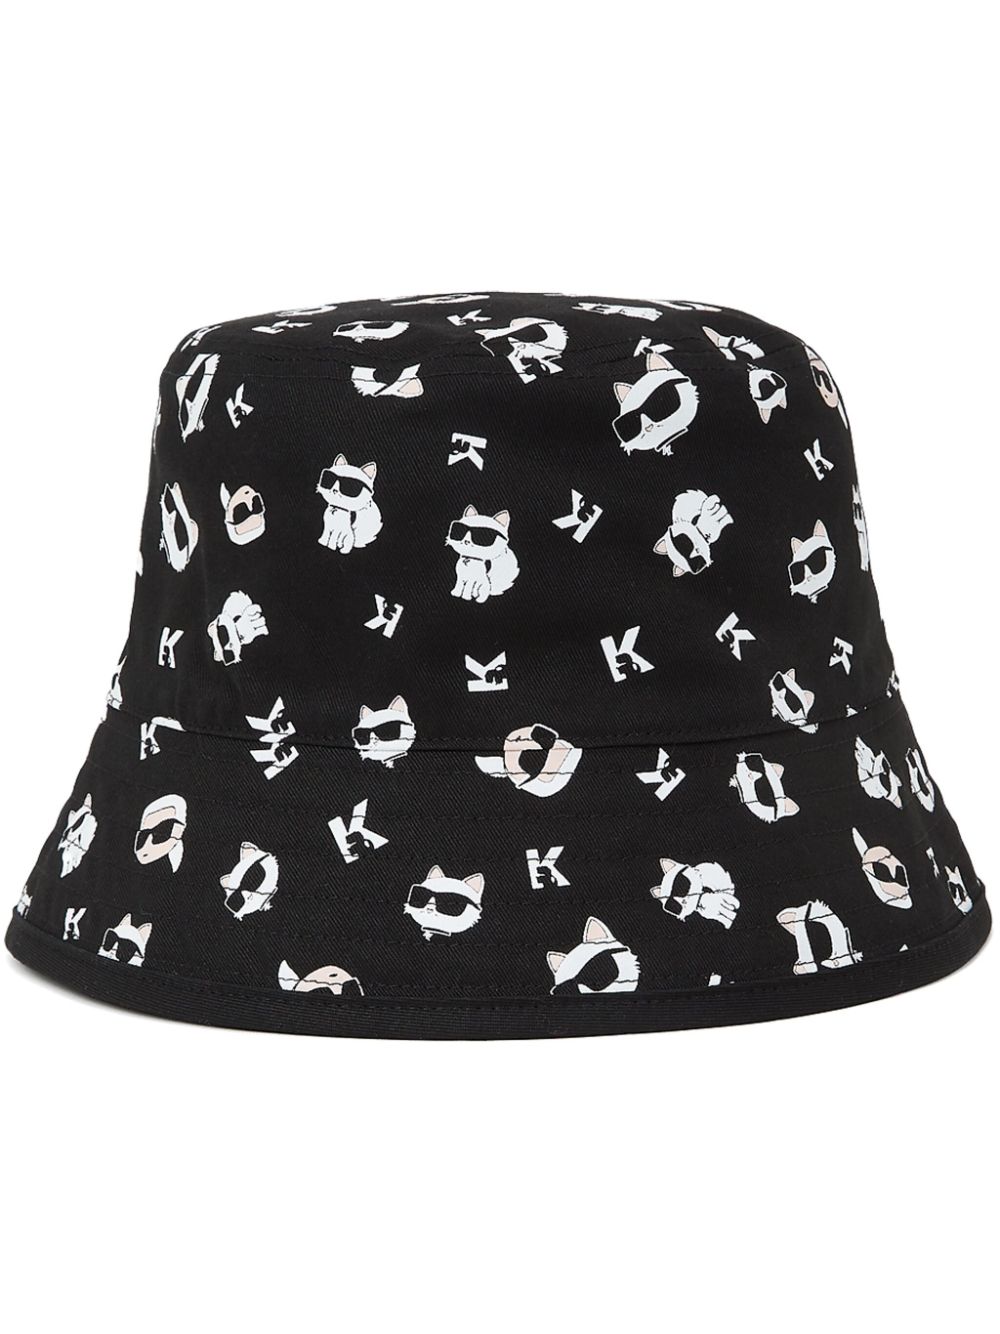 Karl Lagerfeld Ikonik Choupette Reversible Bucket Hat In Black